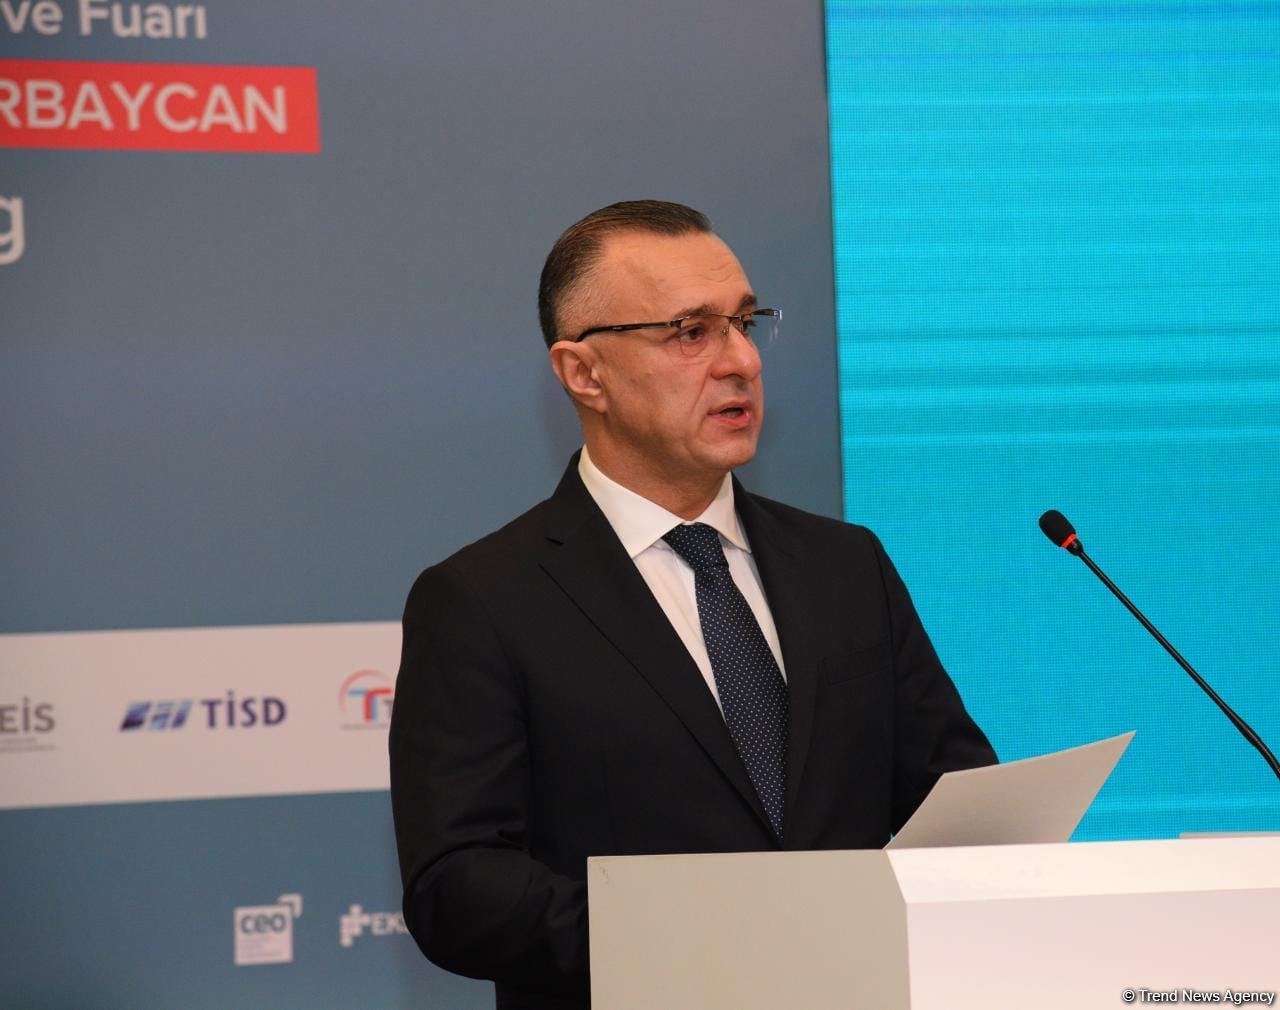 В Азербайджанском медуниверситете обучается более 700 студентов из Турции - министр (ФОТО)